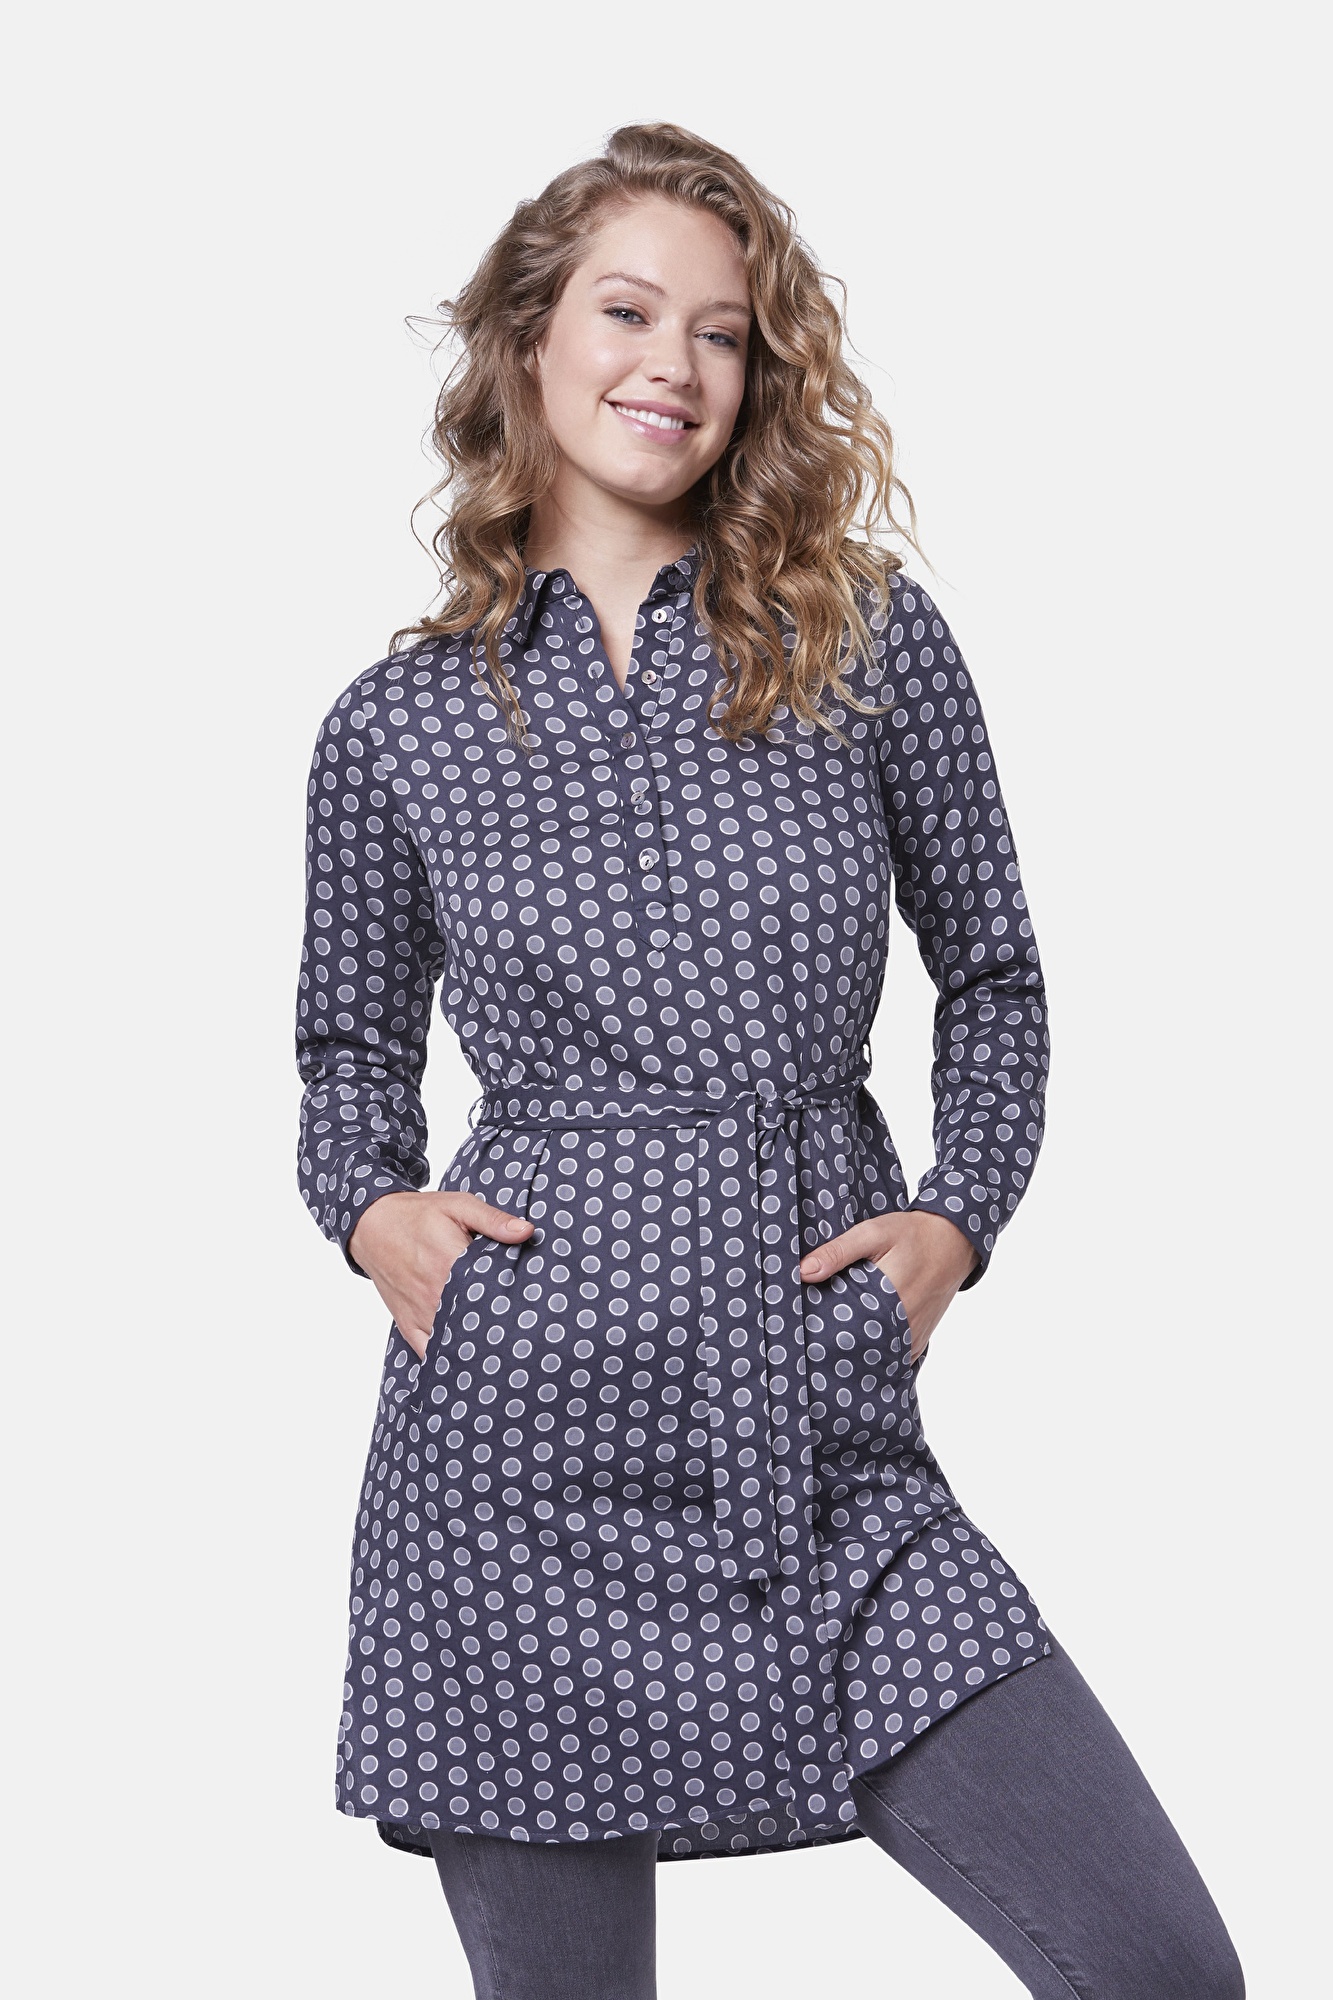 Kleid mit einem modernen Punktedruck in dunkelgrau | bugatti | Blusenkleider